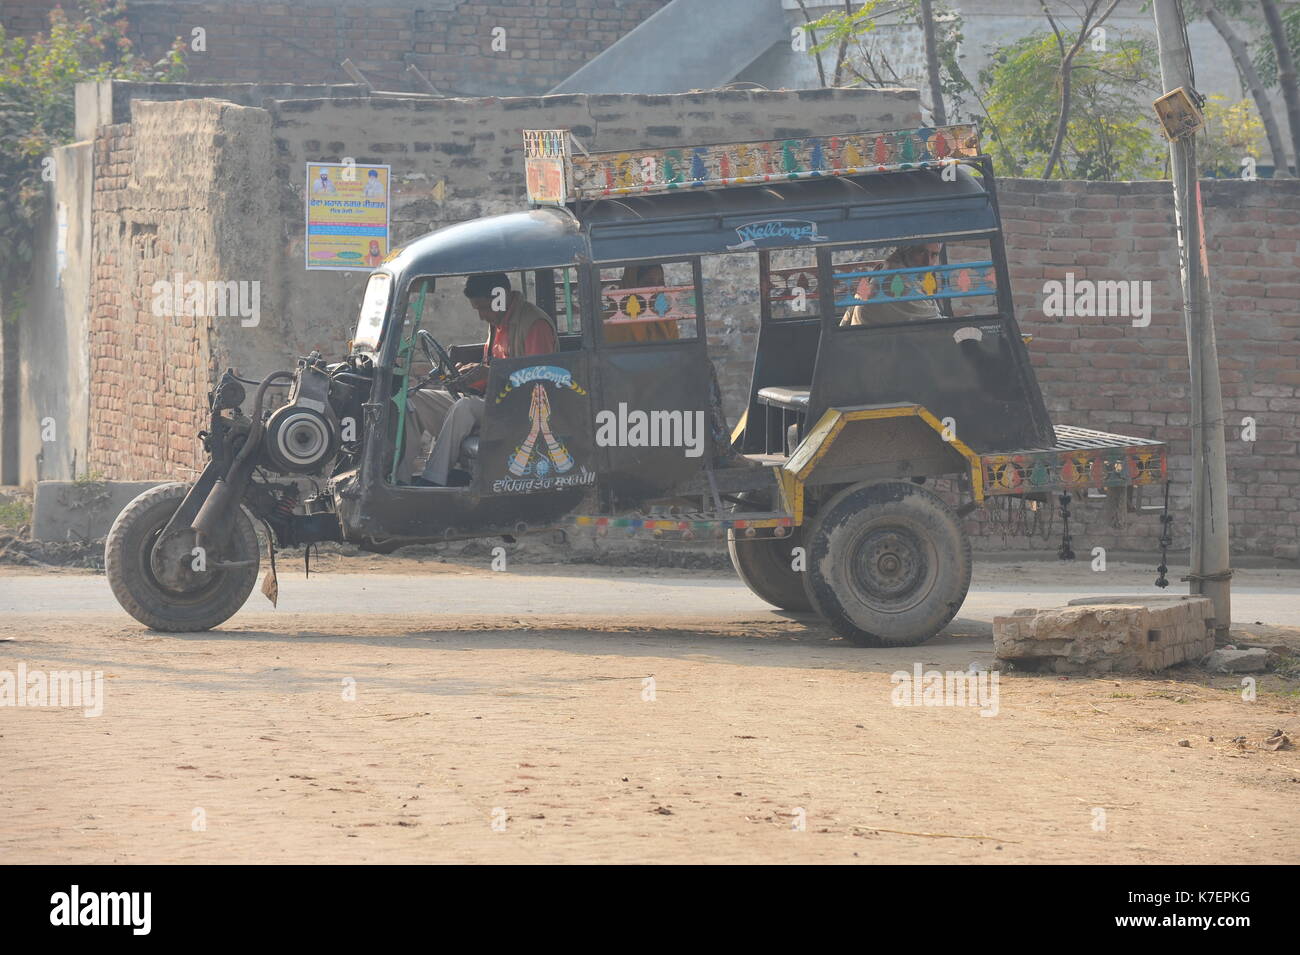 Three wheeler bus in Punjab Stock Photo